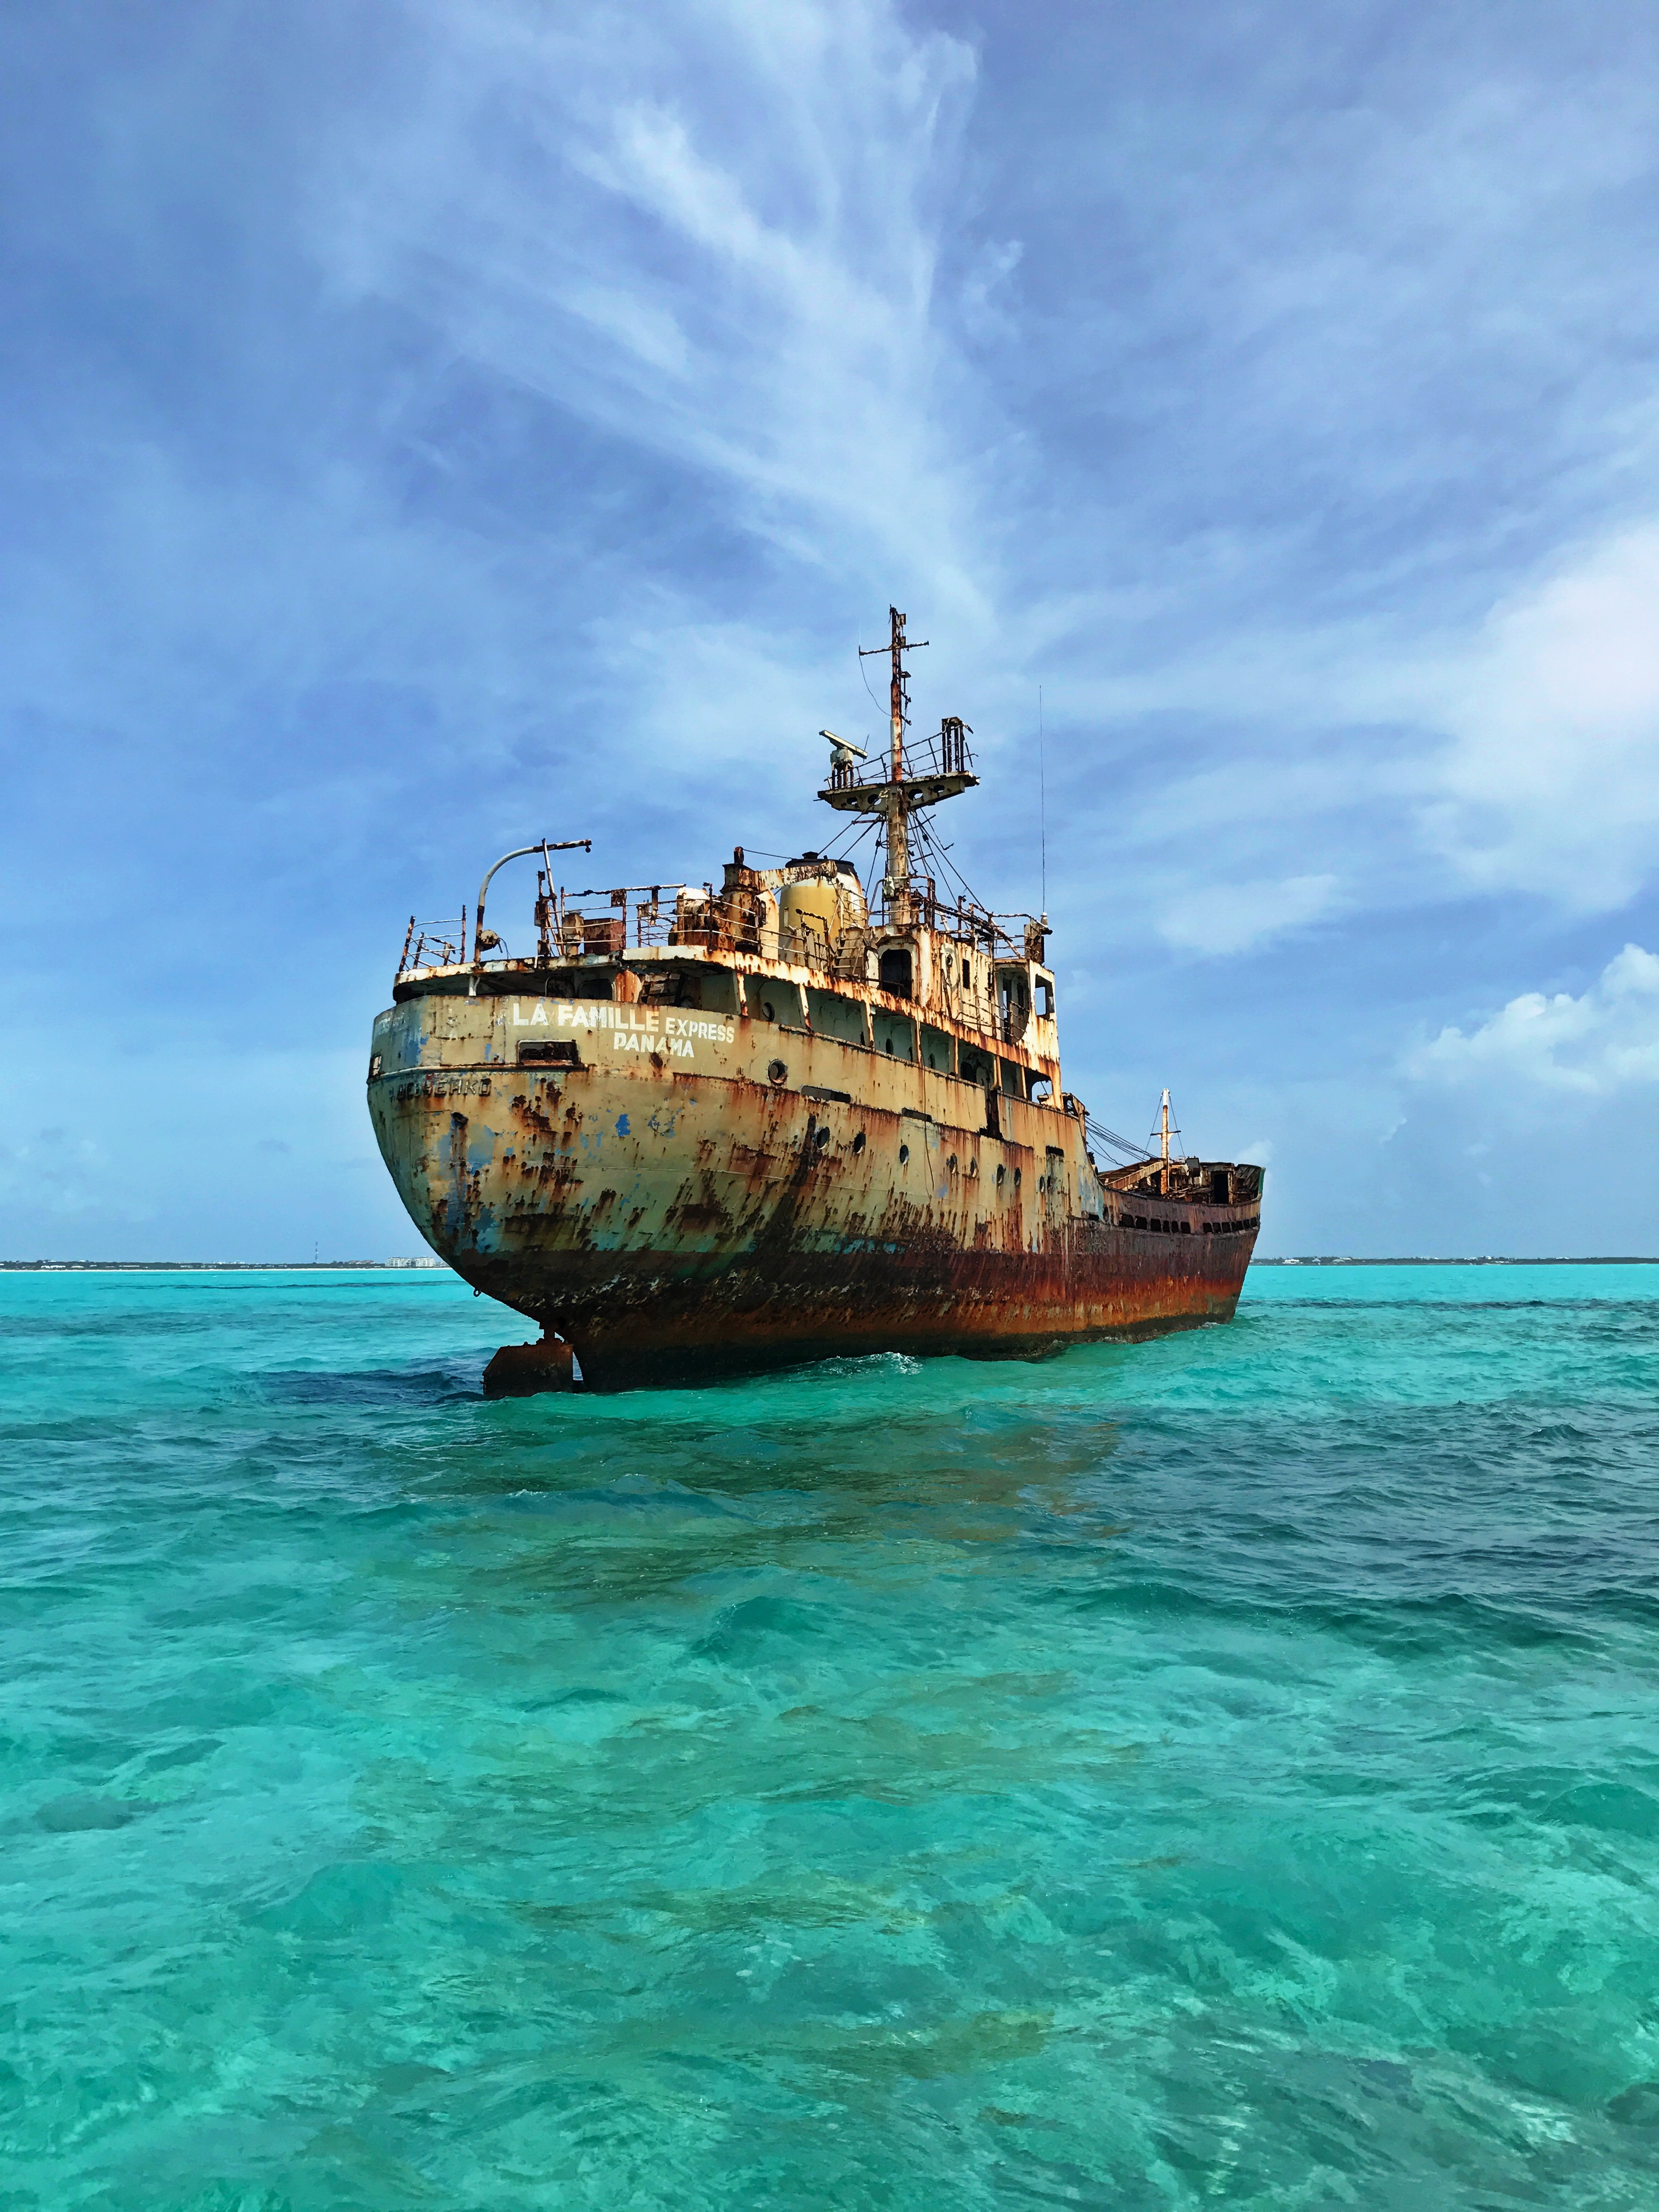 Turks and Caicos Shipwreck